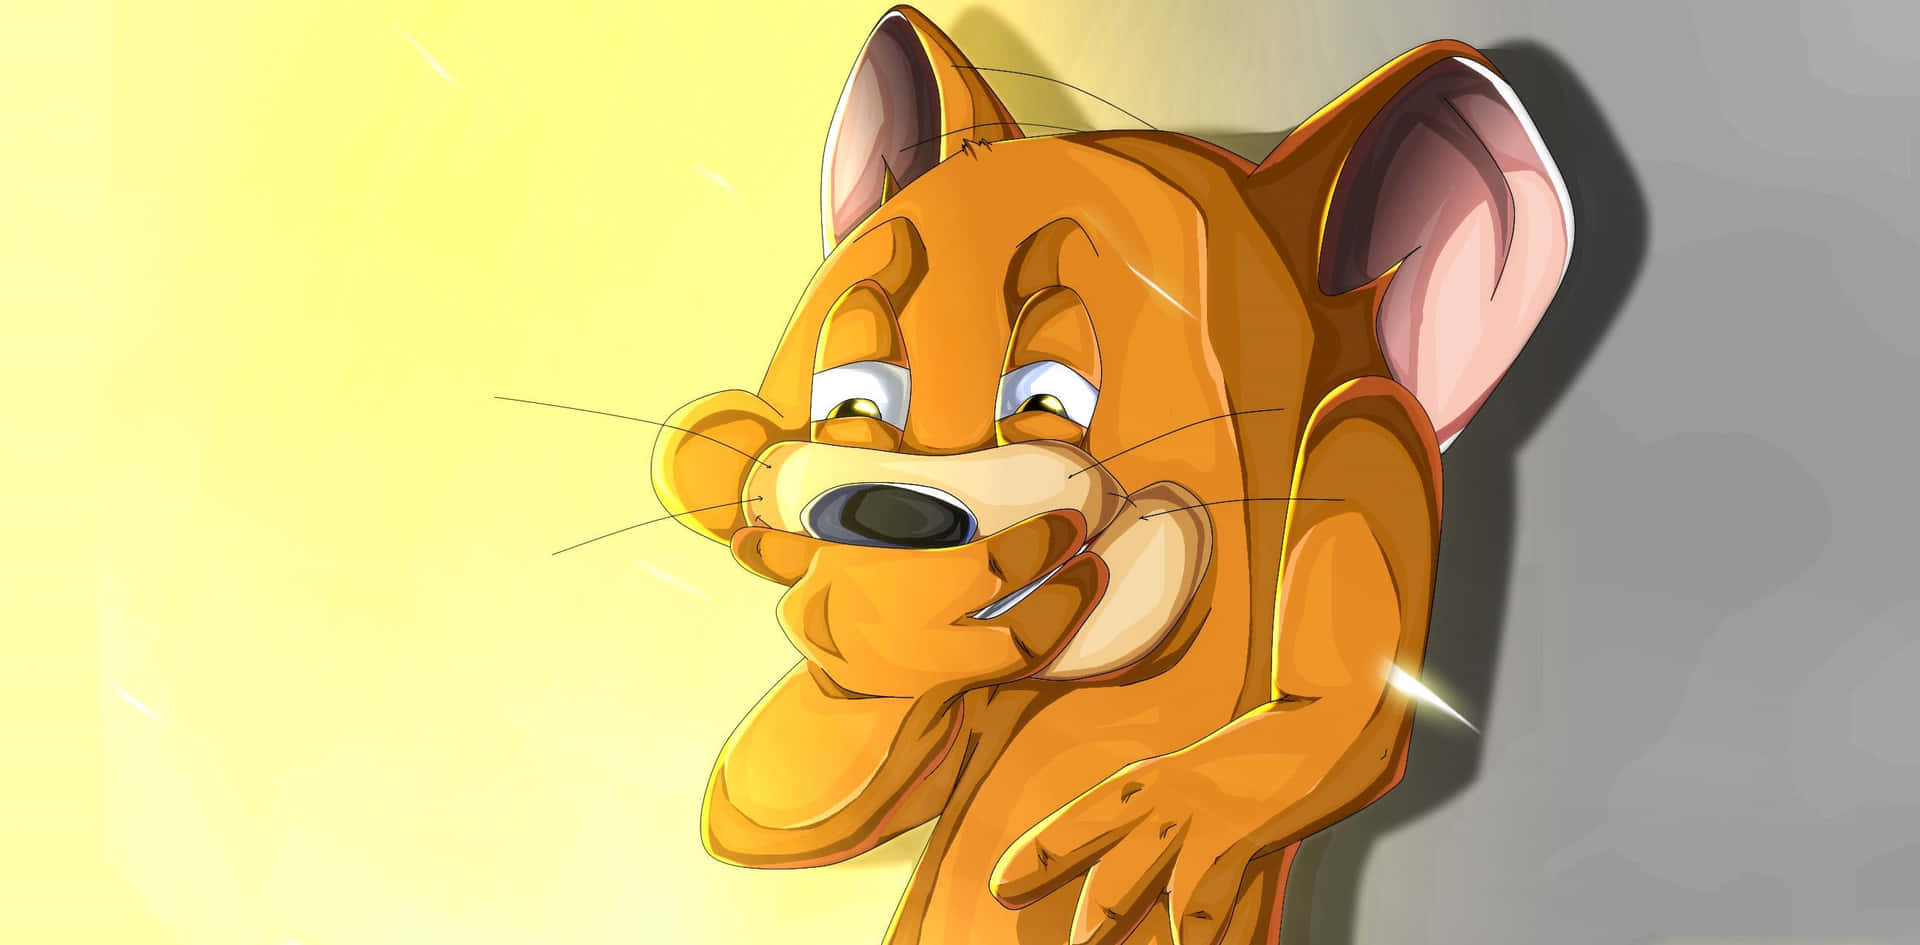 Dasklassische Katzen- Und Maus-duo Tom Und Jerry In Einem Lustigen Moment Wallpaper